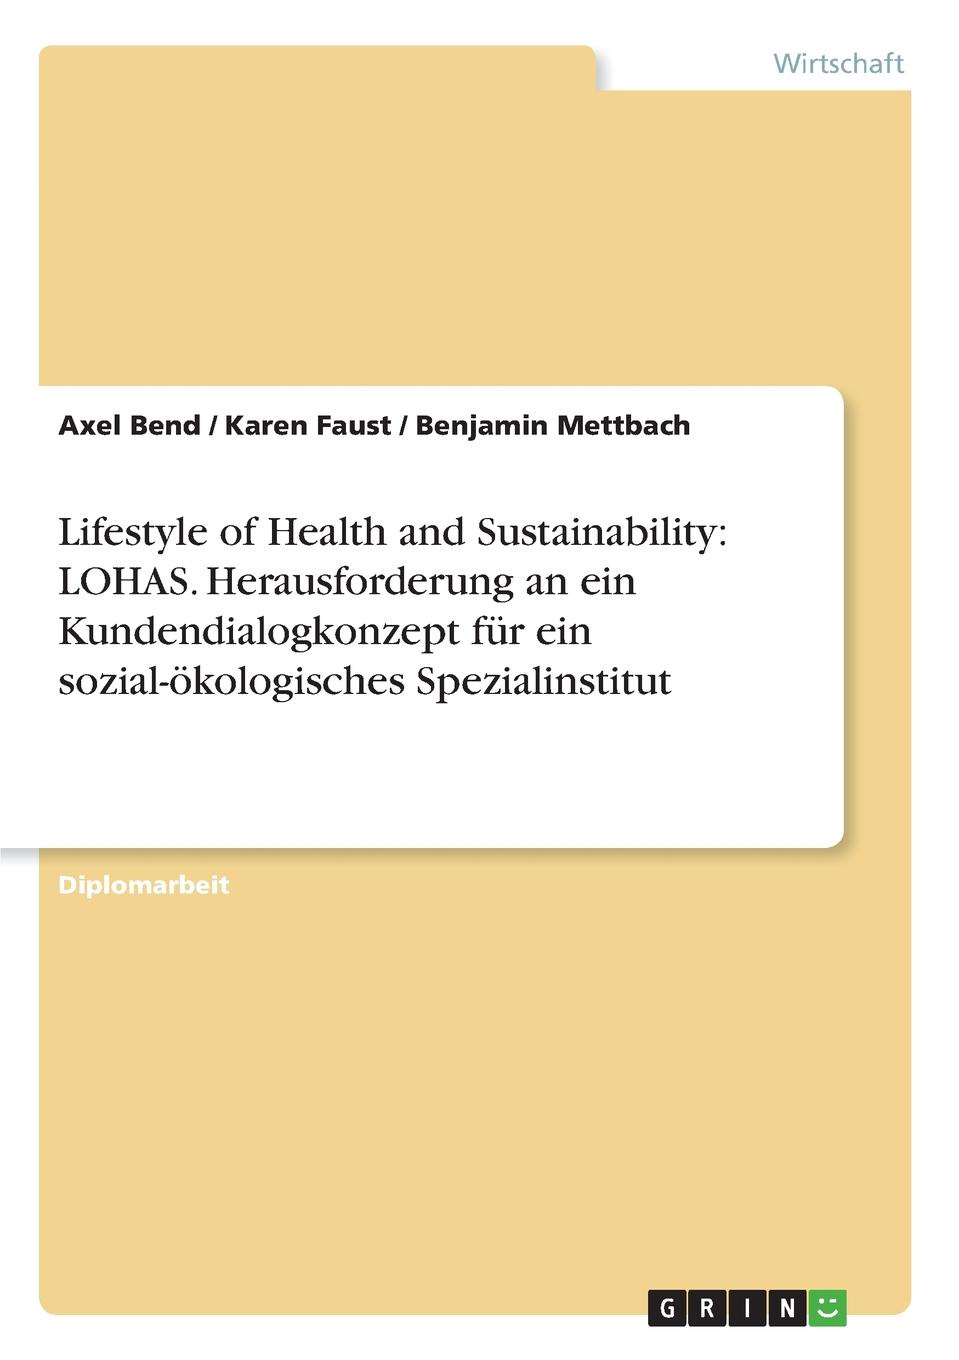 Lifestyle of Health and Sustainability. LOHAS. Herausforderung an ein Kundendialogkonzept fur ein sozial-okologisches Spezialinstitut